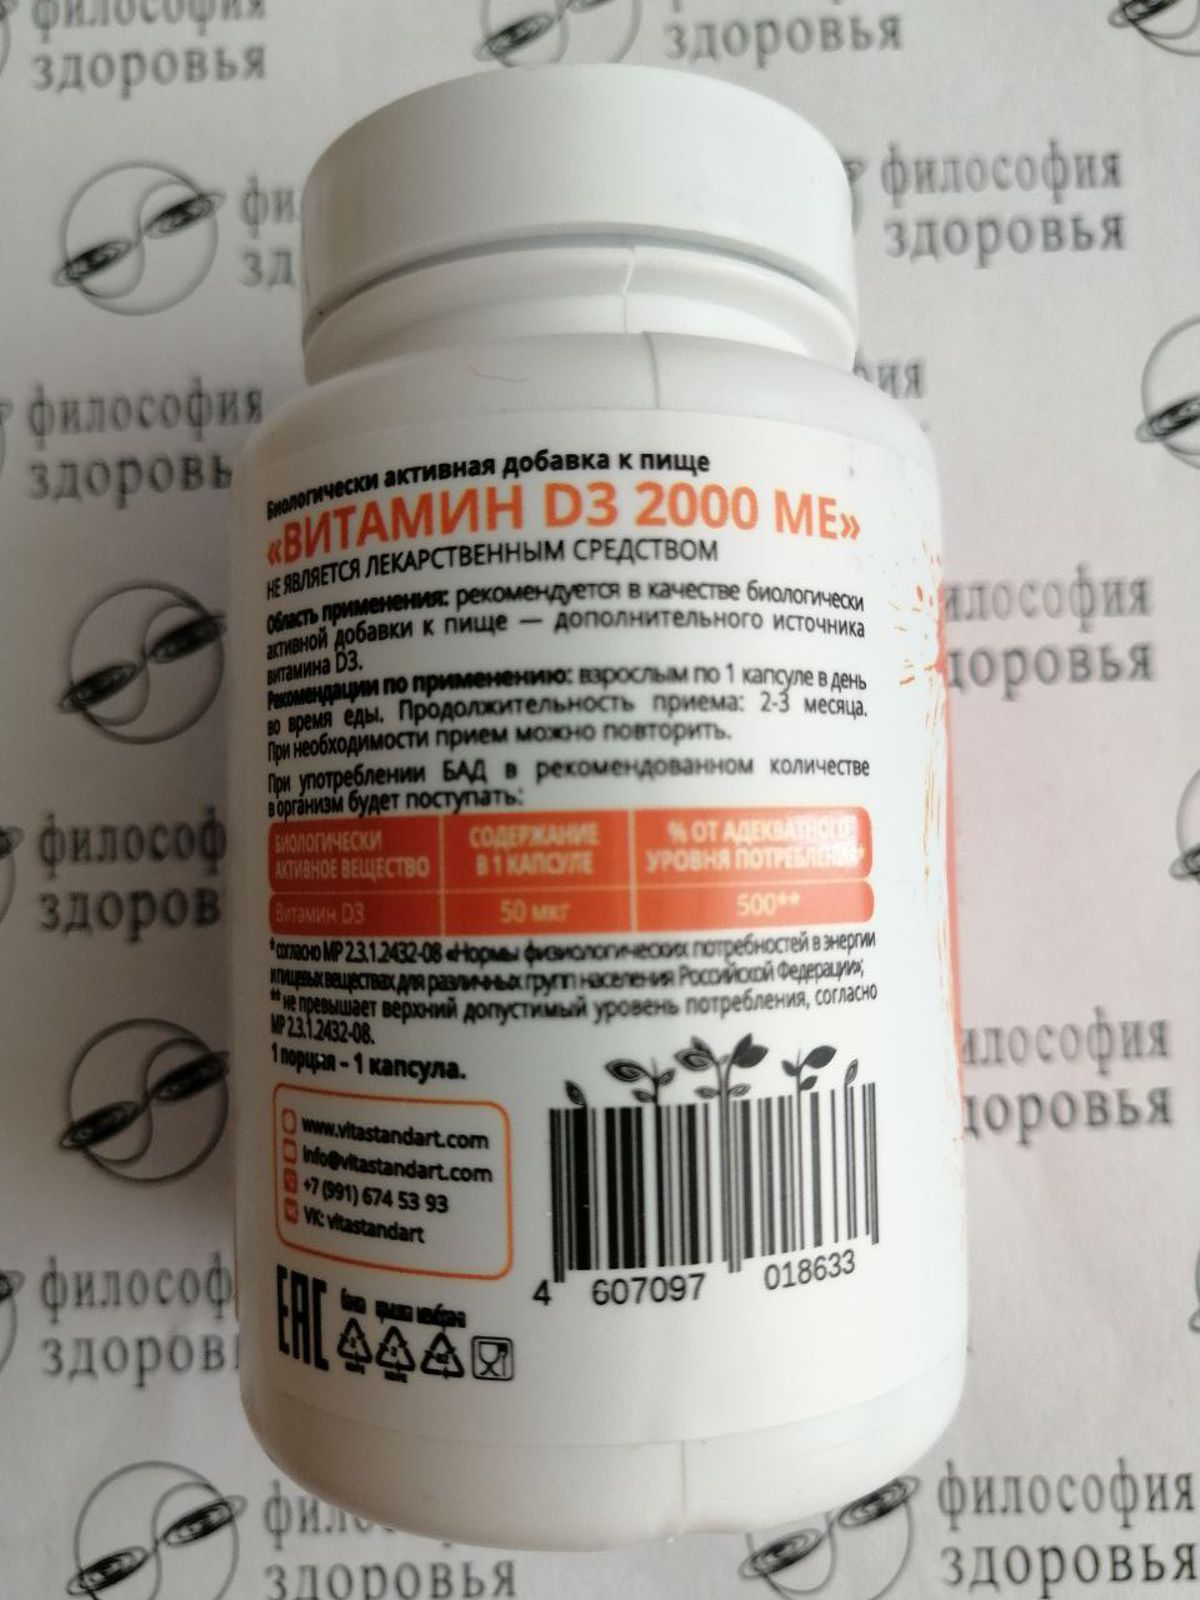 Витамин D3 Стандарт в упаковке 2